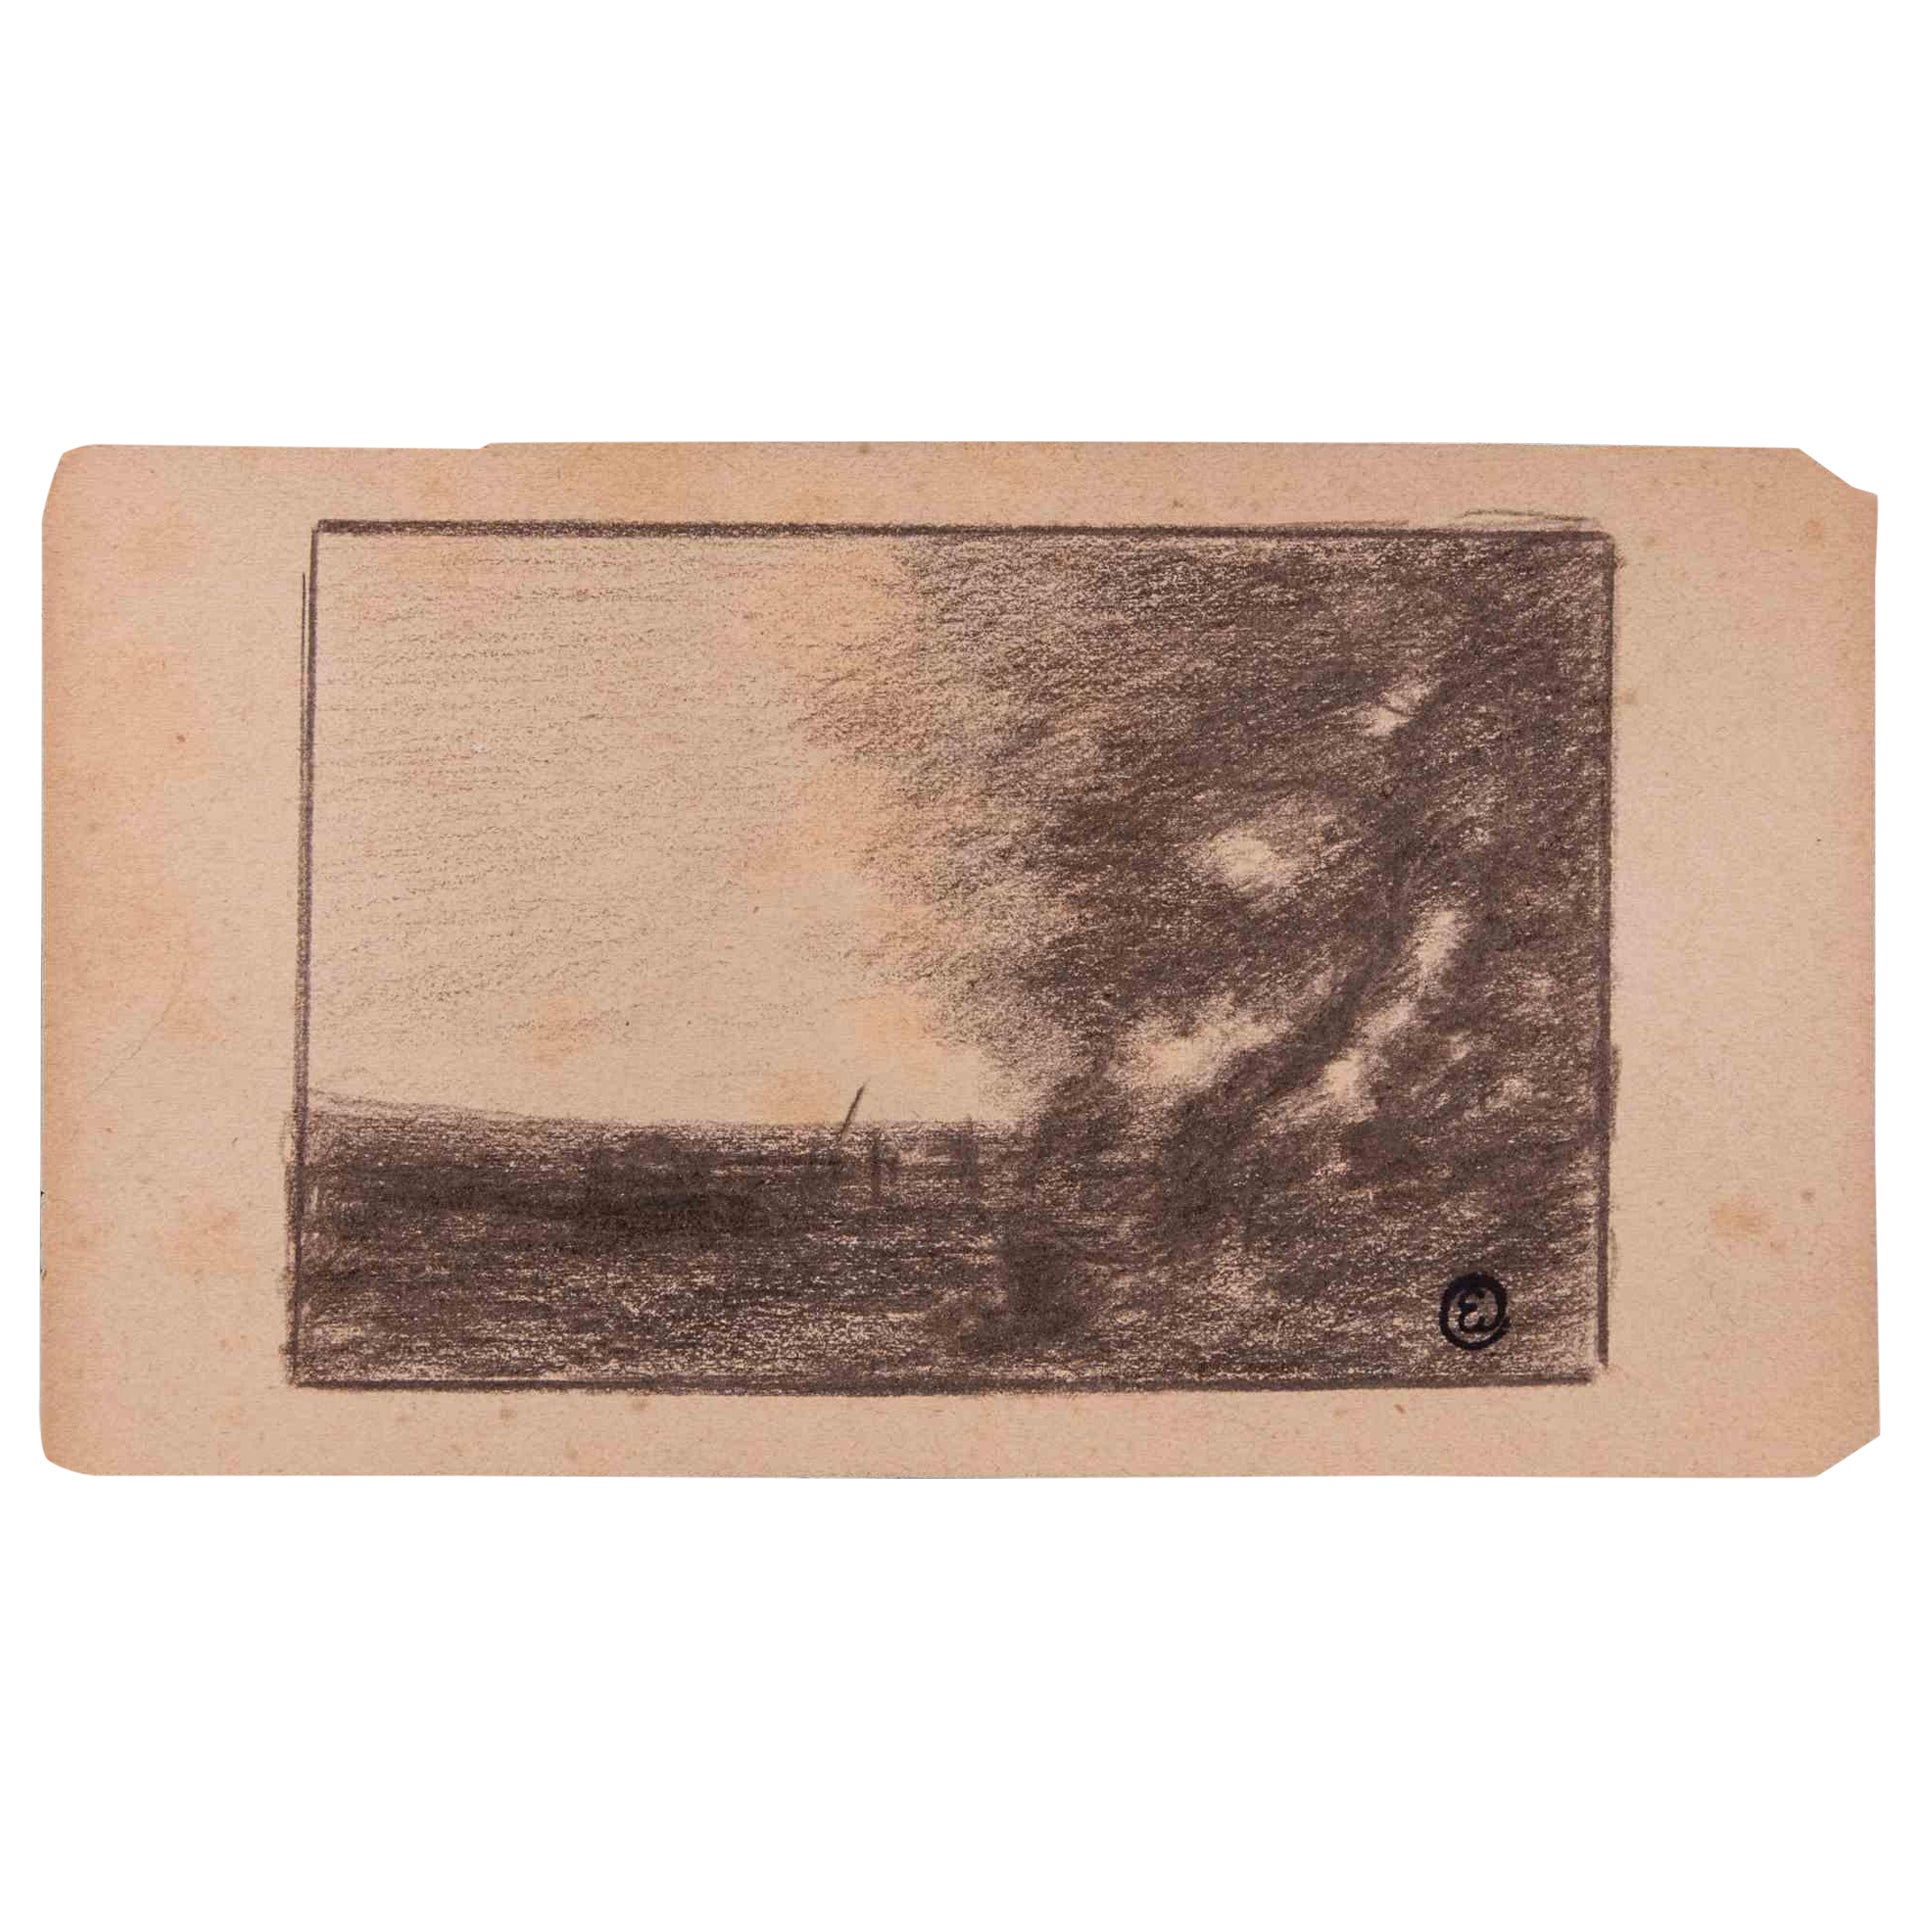 Paysage est un dessin original au fusain réalisé au début du 20ème siècle par Edmond Cuisinier (1857-1917).

Monogramme sur la partie inférieure. Avec le tampon au dos.

Bonnes conditions.

L'œuvre d'art est décrite par des traits habiles et